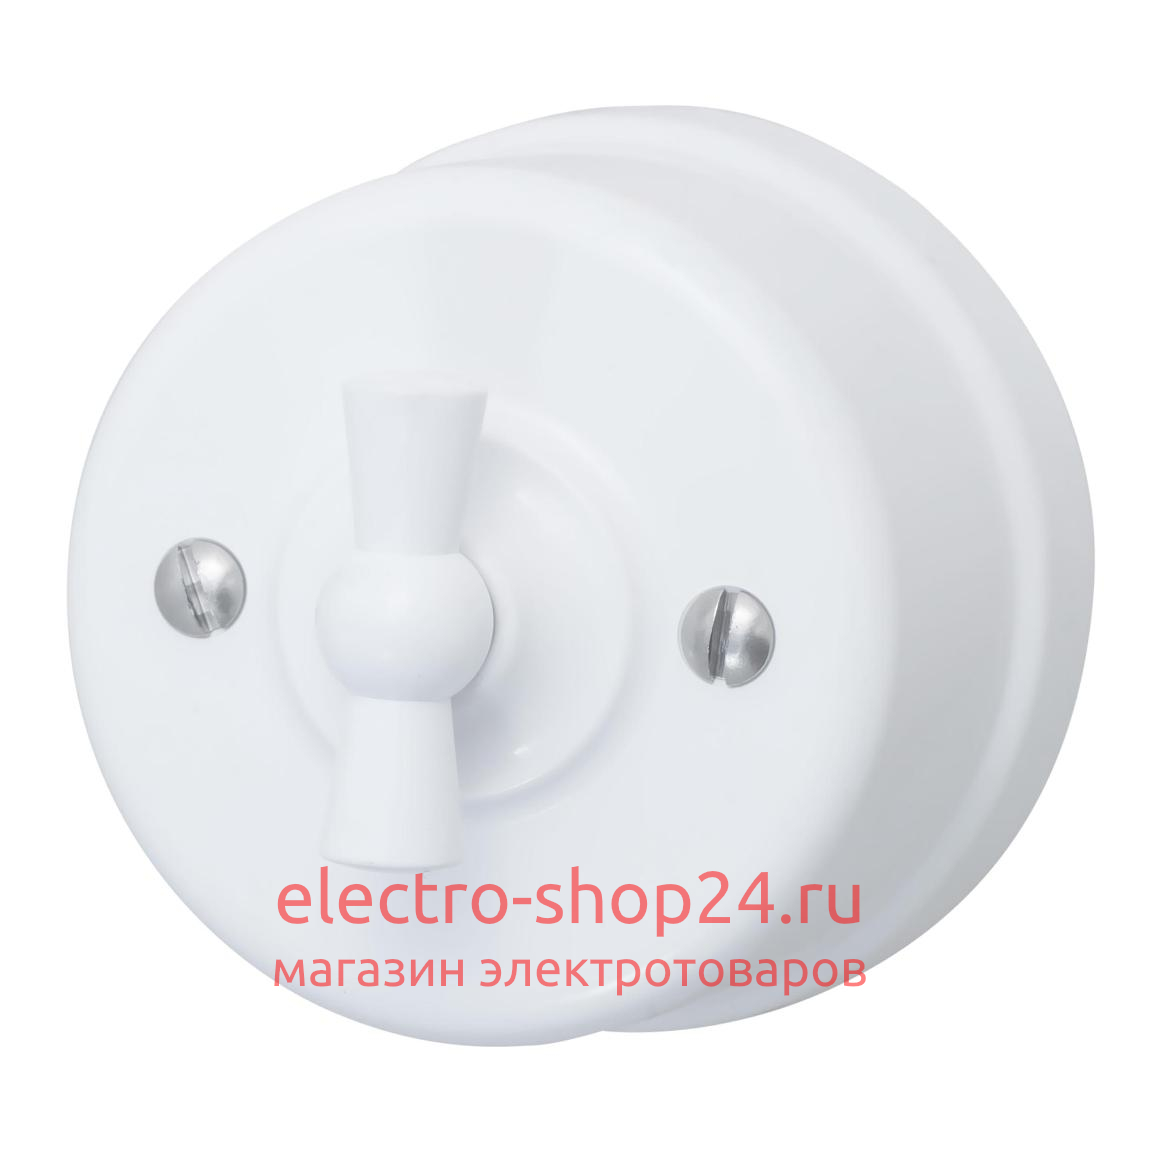 Выключатель 1-клавишный ОП Bironi Лизетта пластик цвет белый B1-200-21 B1-200-21 - магазин электротехники Electroshop